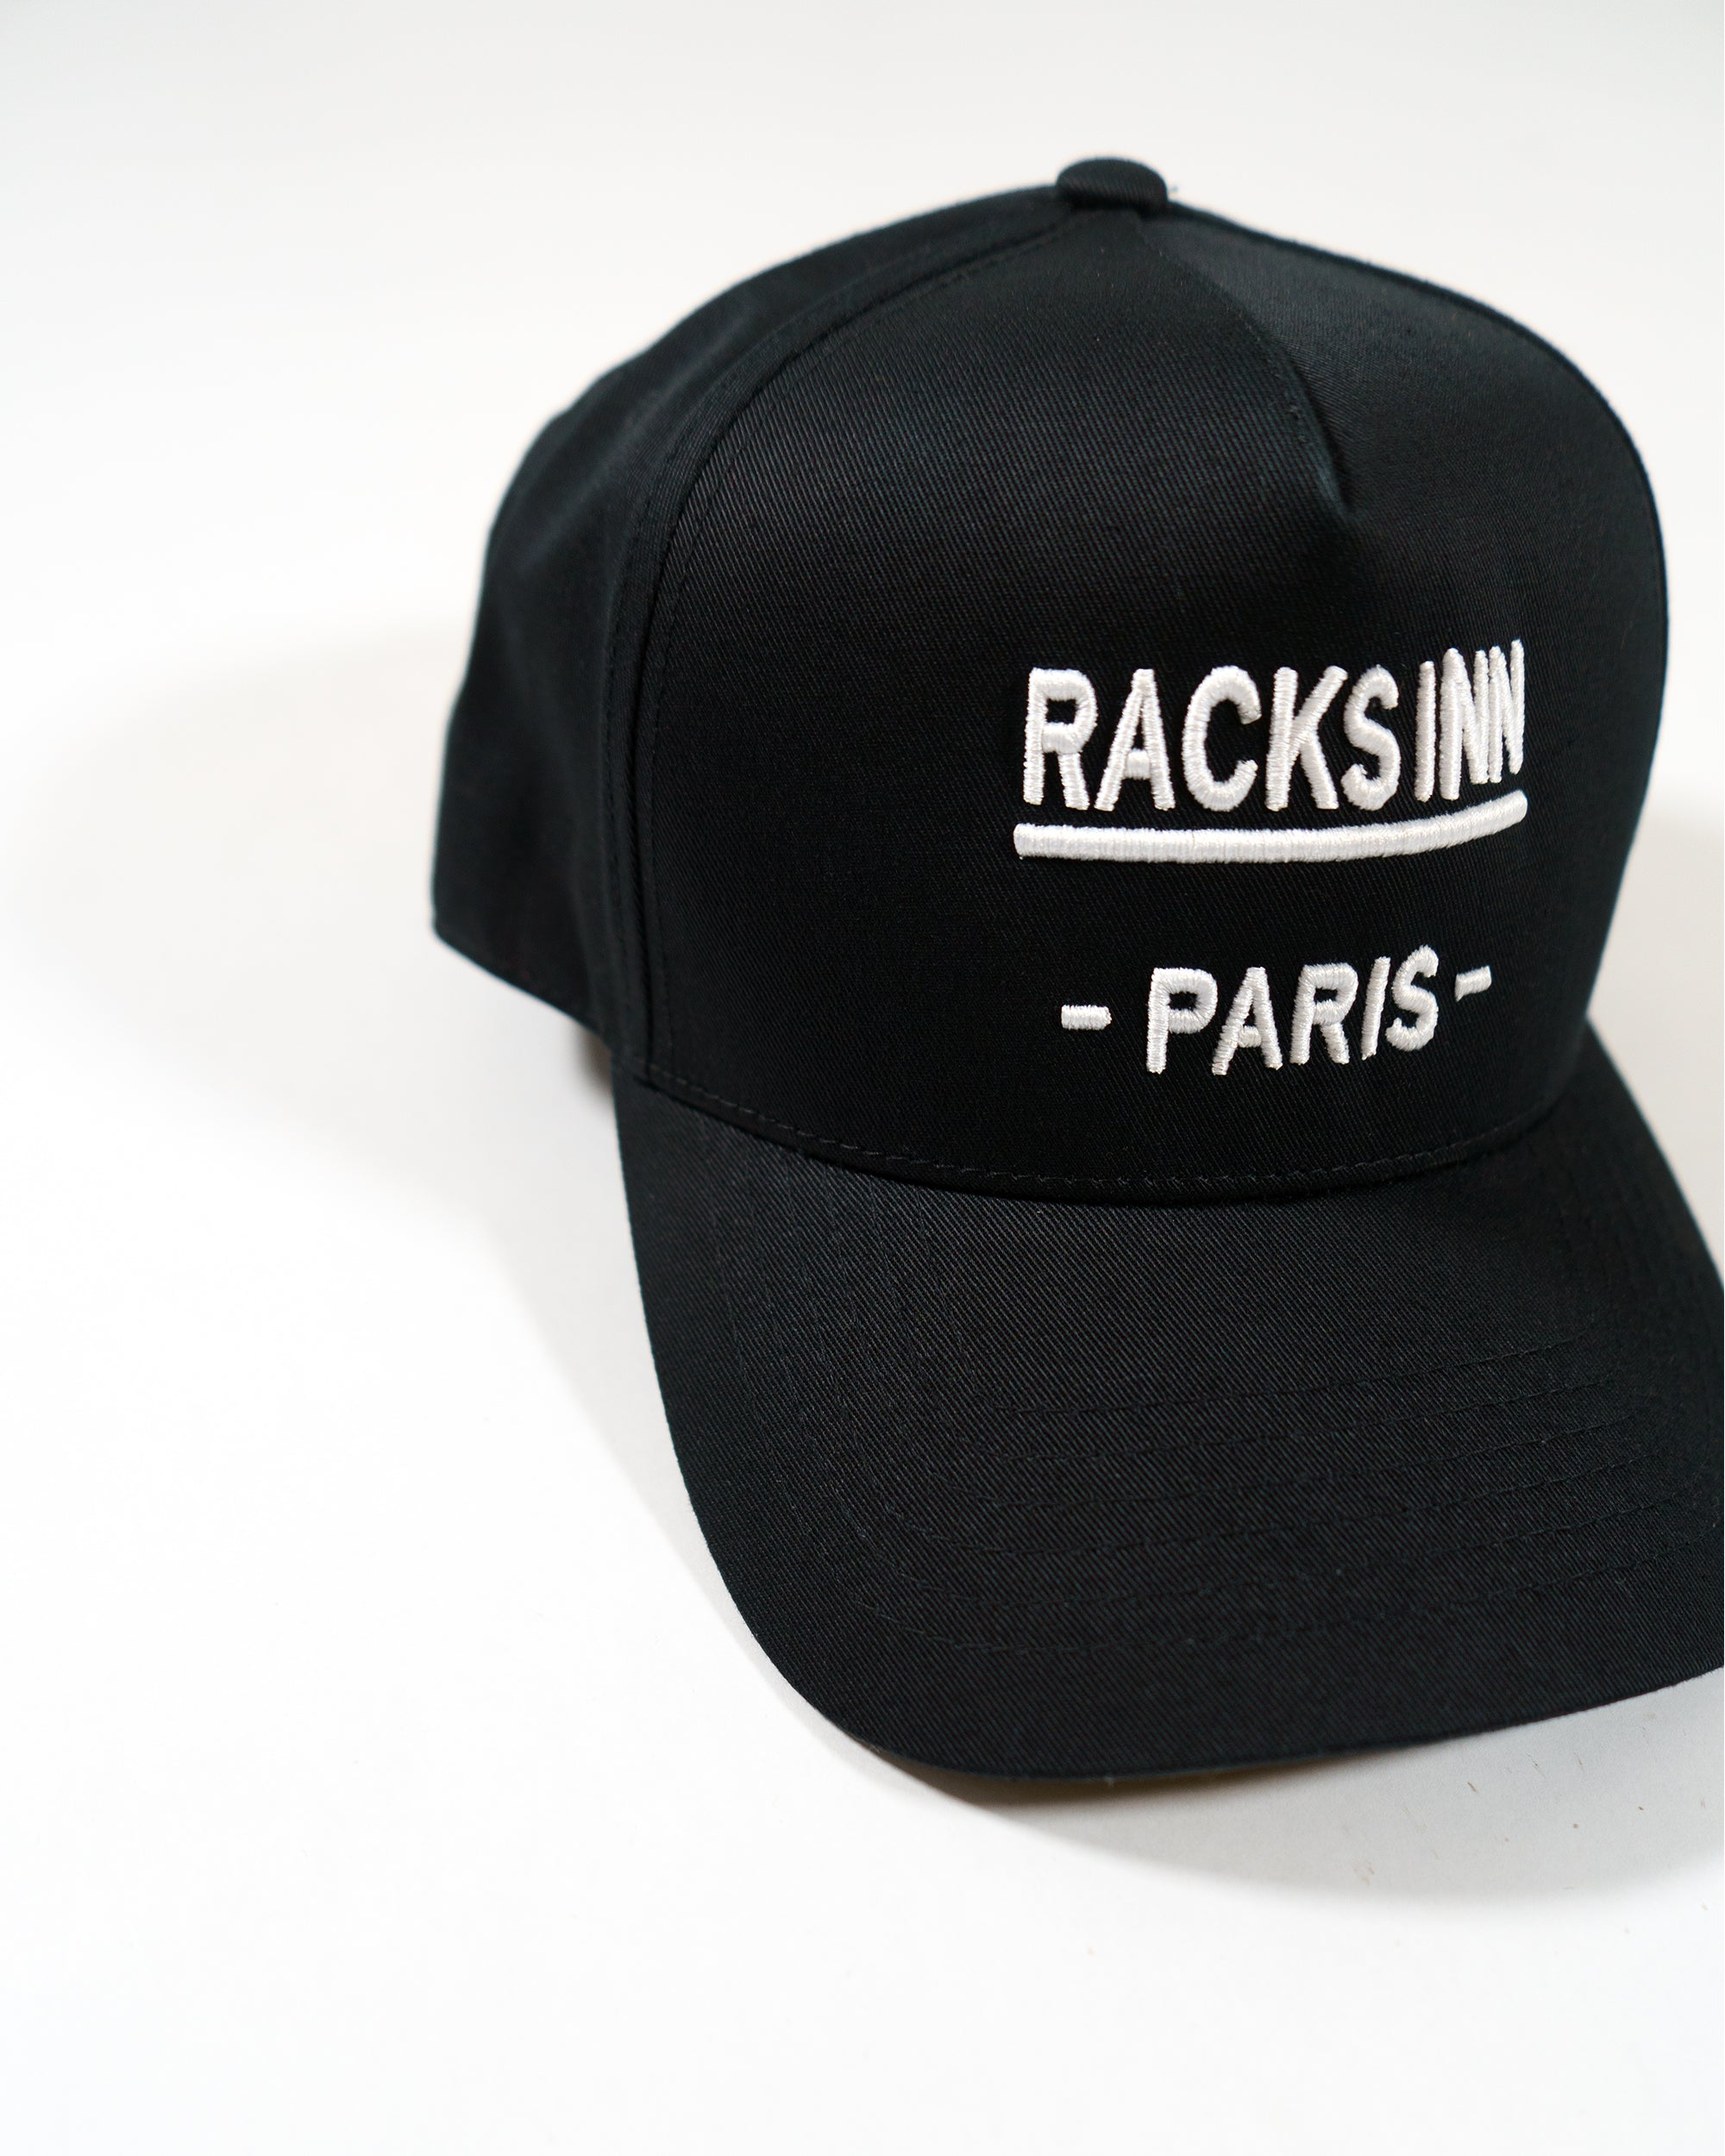 Paris Trucker Hat - Black White